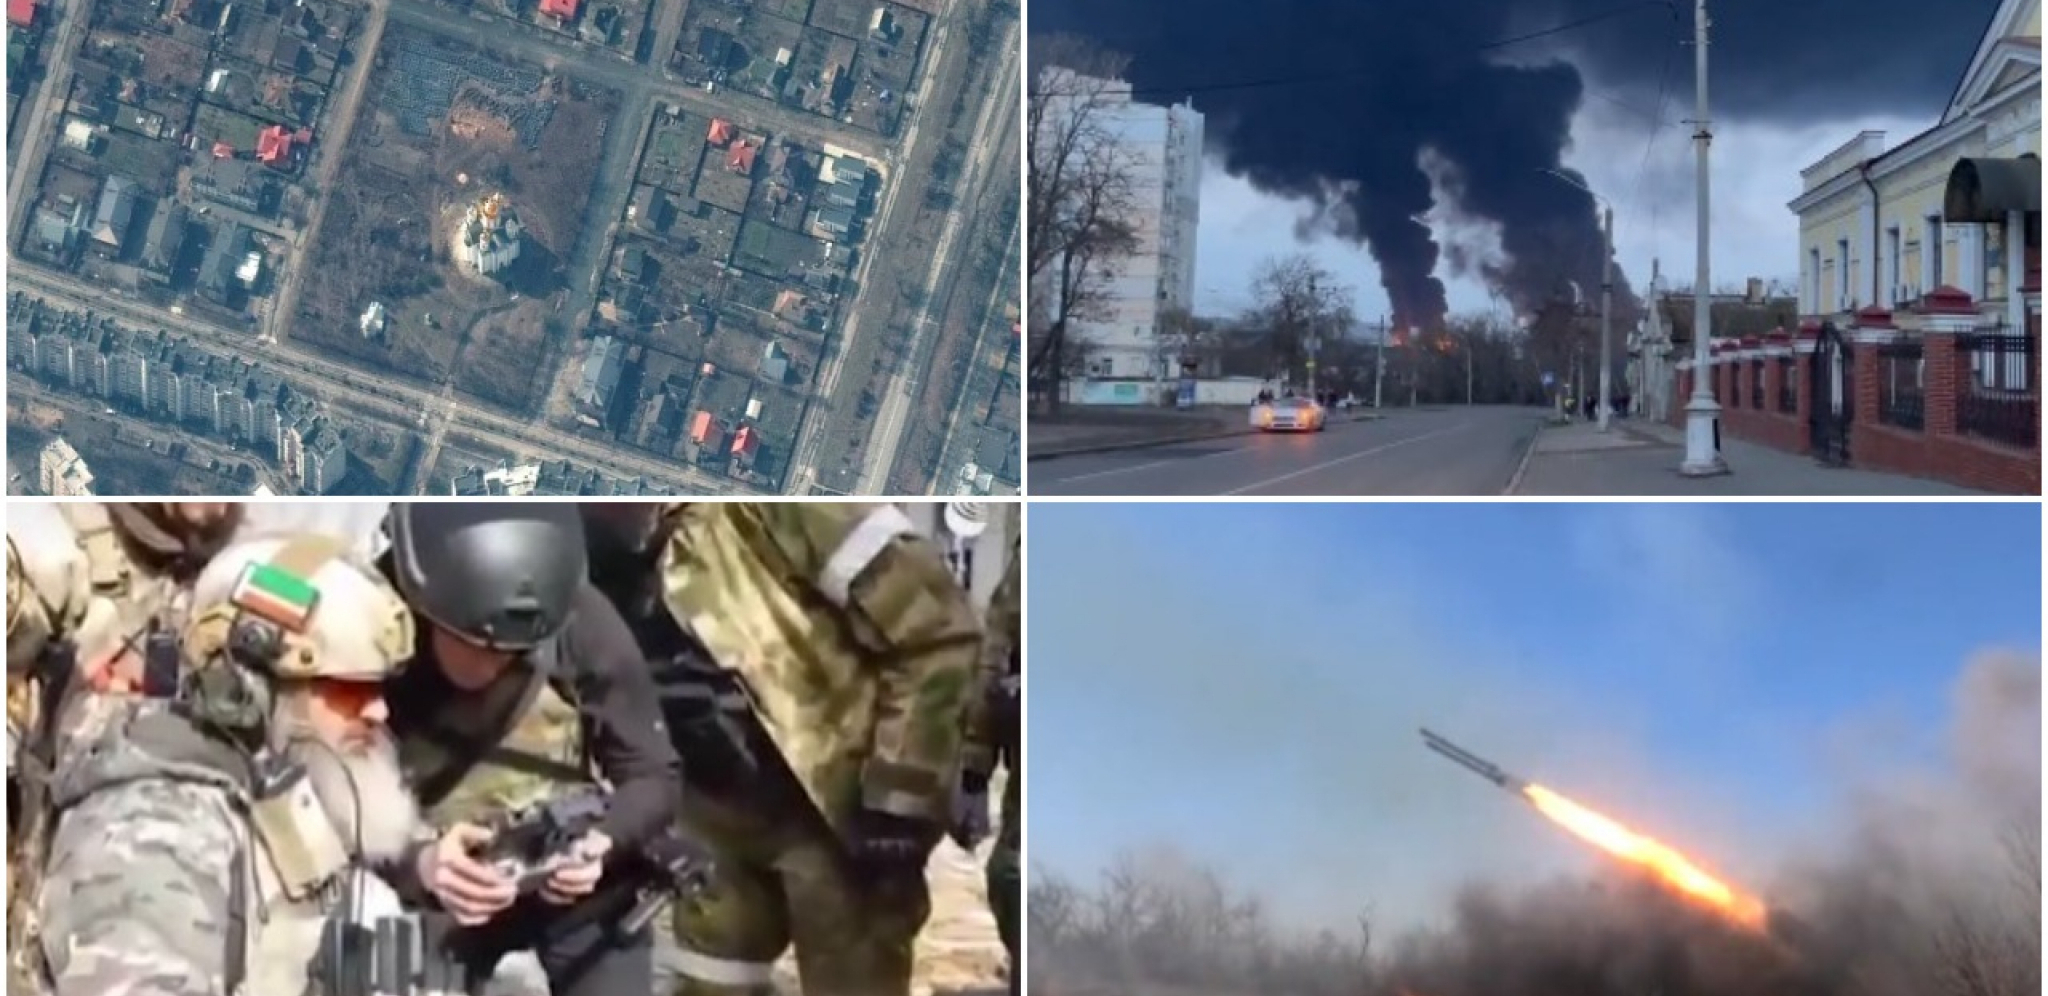 UNIŠTEN LOGISTIČKI CENTAR U LAVOVU Ruske snage izvele vazdušni napad, eliminisale strano oružje